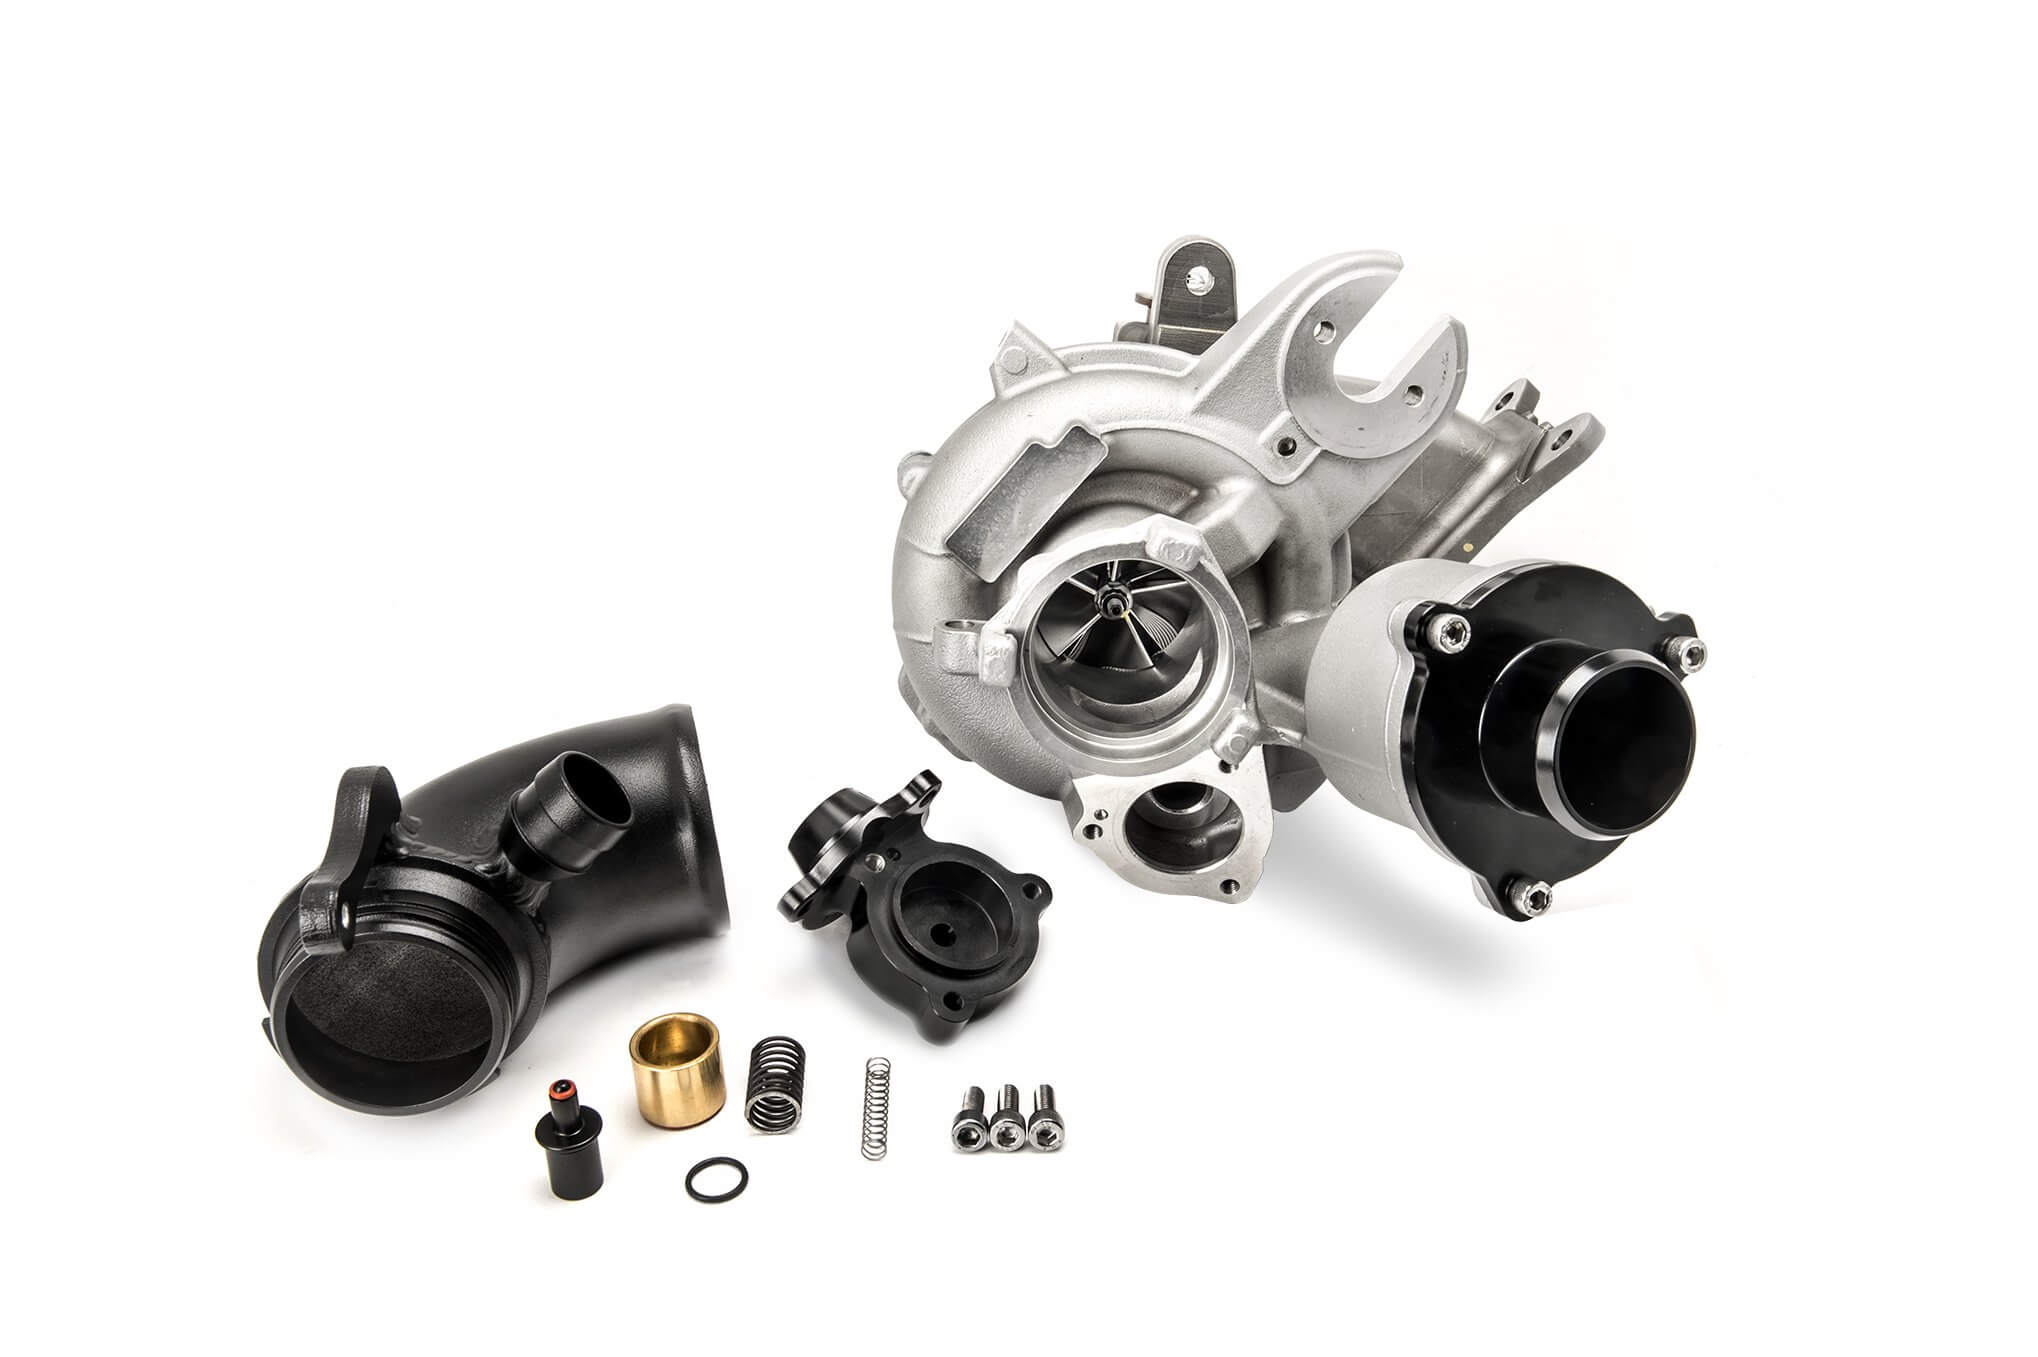 tomioka racing ih600 turbo kit product overview image